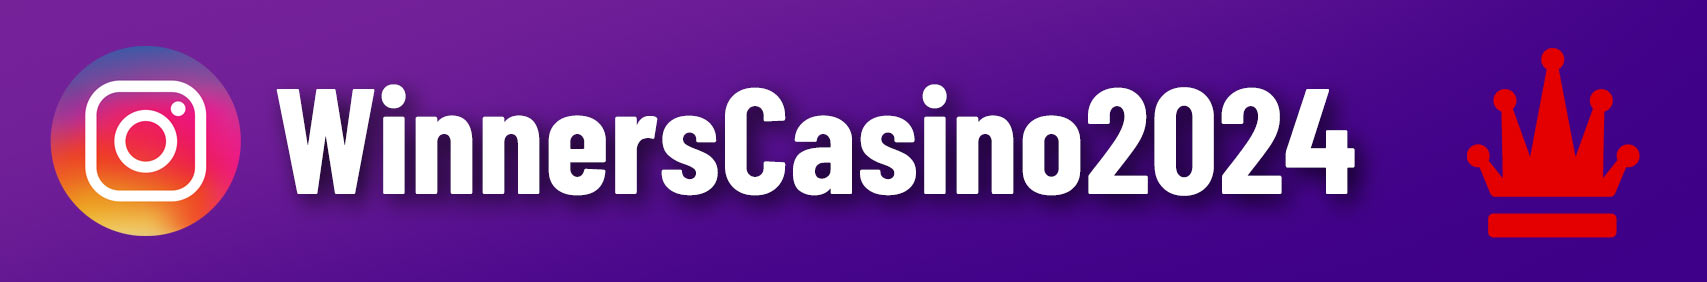 Winners Casino 2024